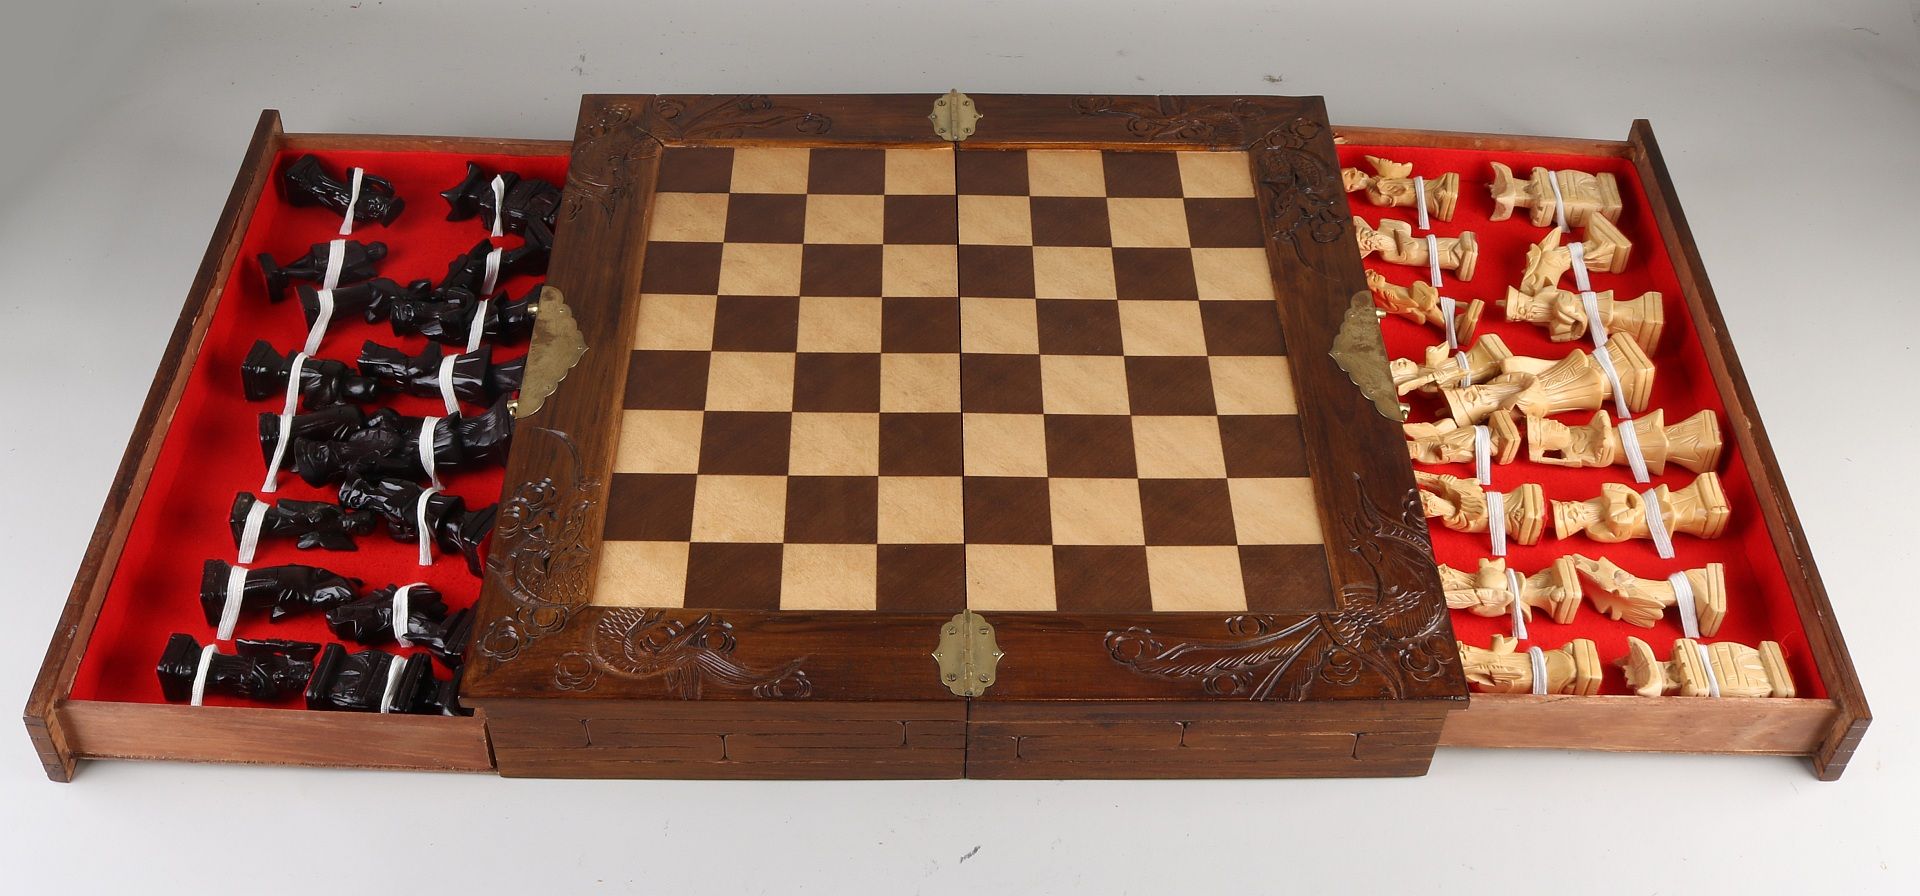 Orientalisches Holz geschnitztes Schachspiel. Zweite Hälfte des 20. Jahrhunderts. Größe: 17 x